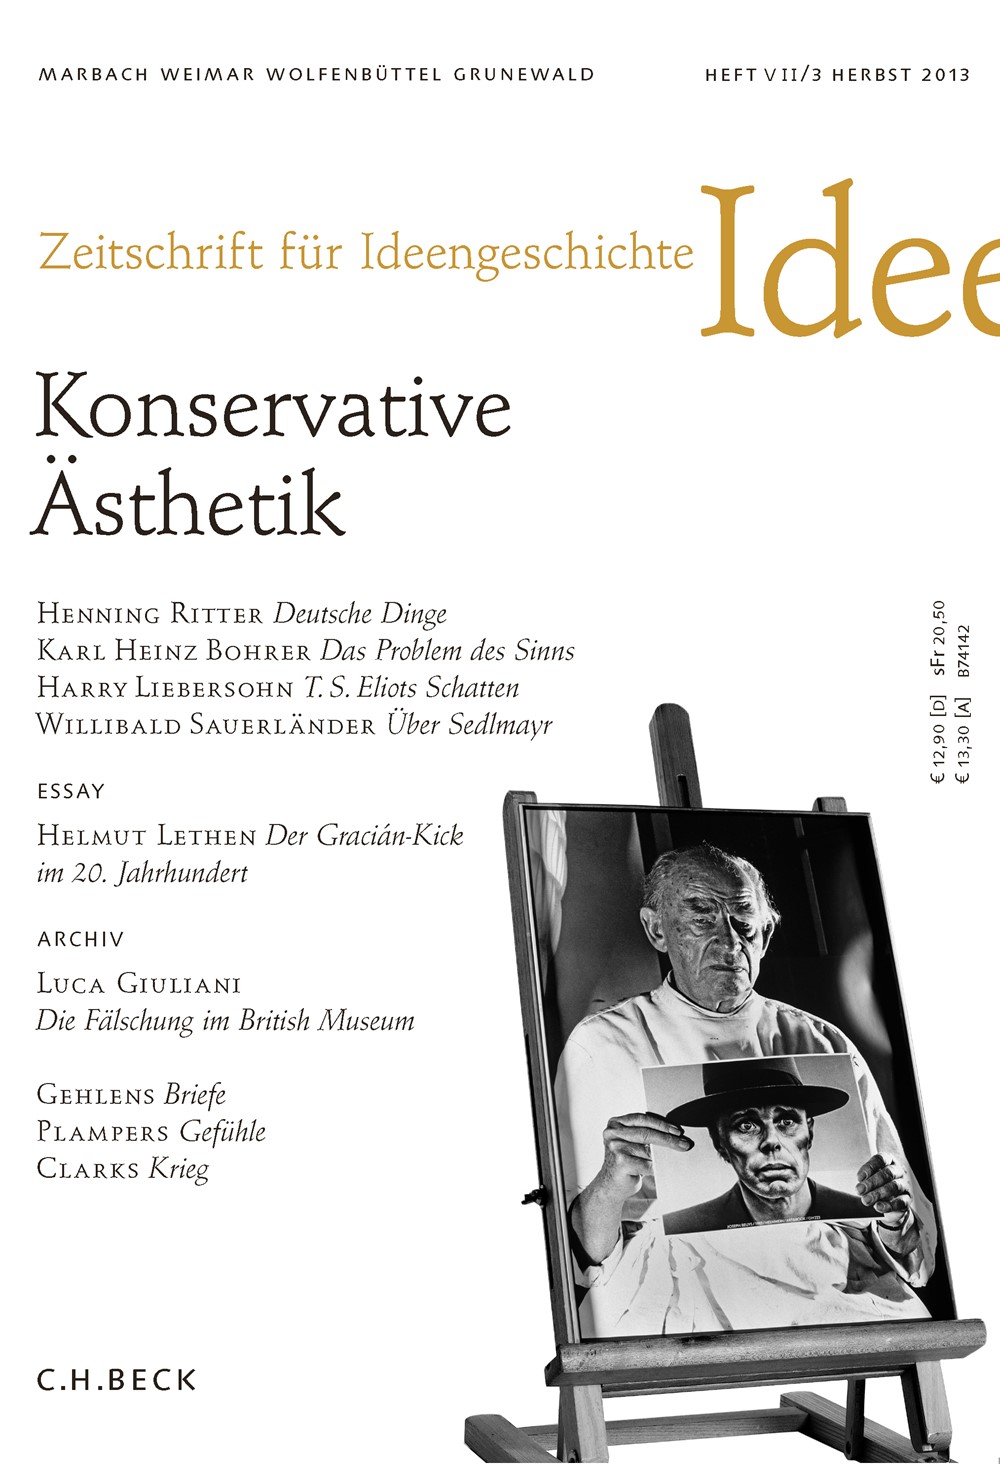 cover of Heft VII/3 Herbst 2013